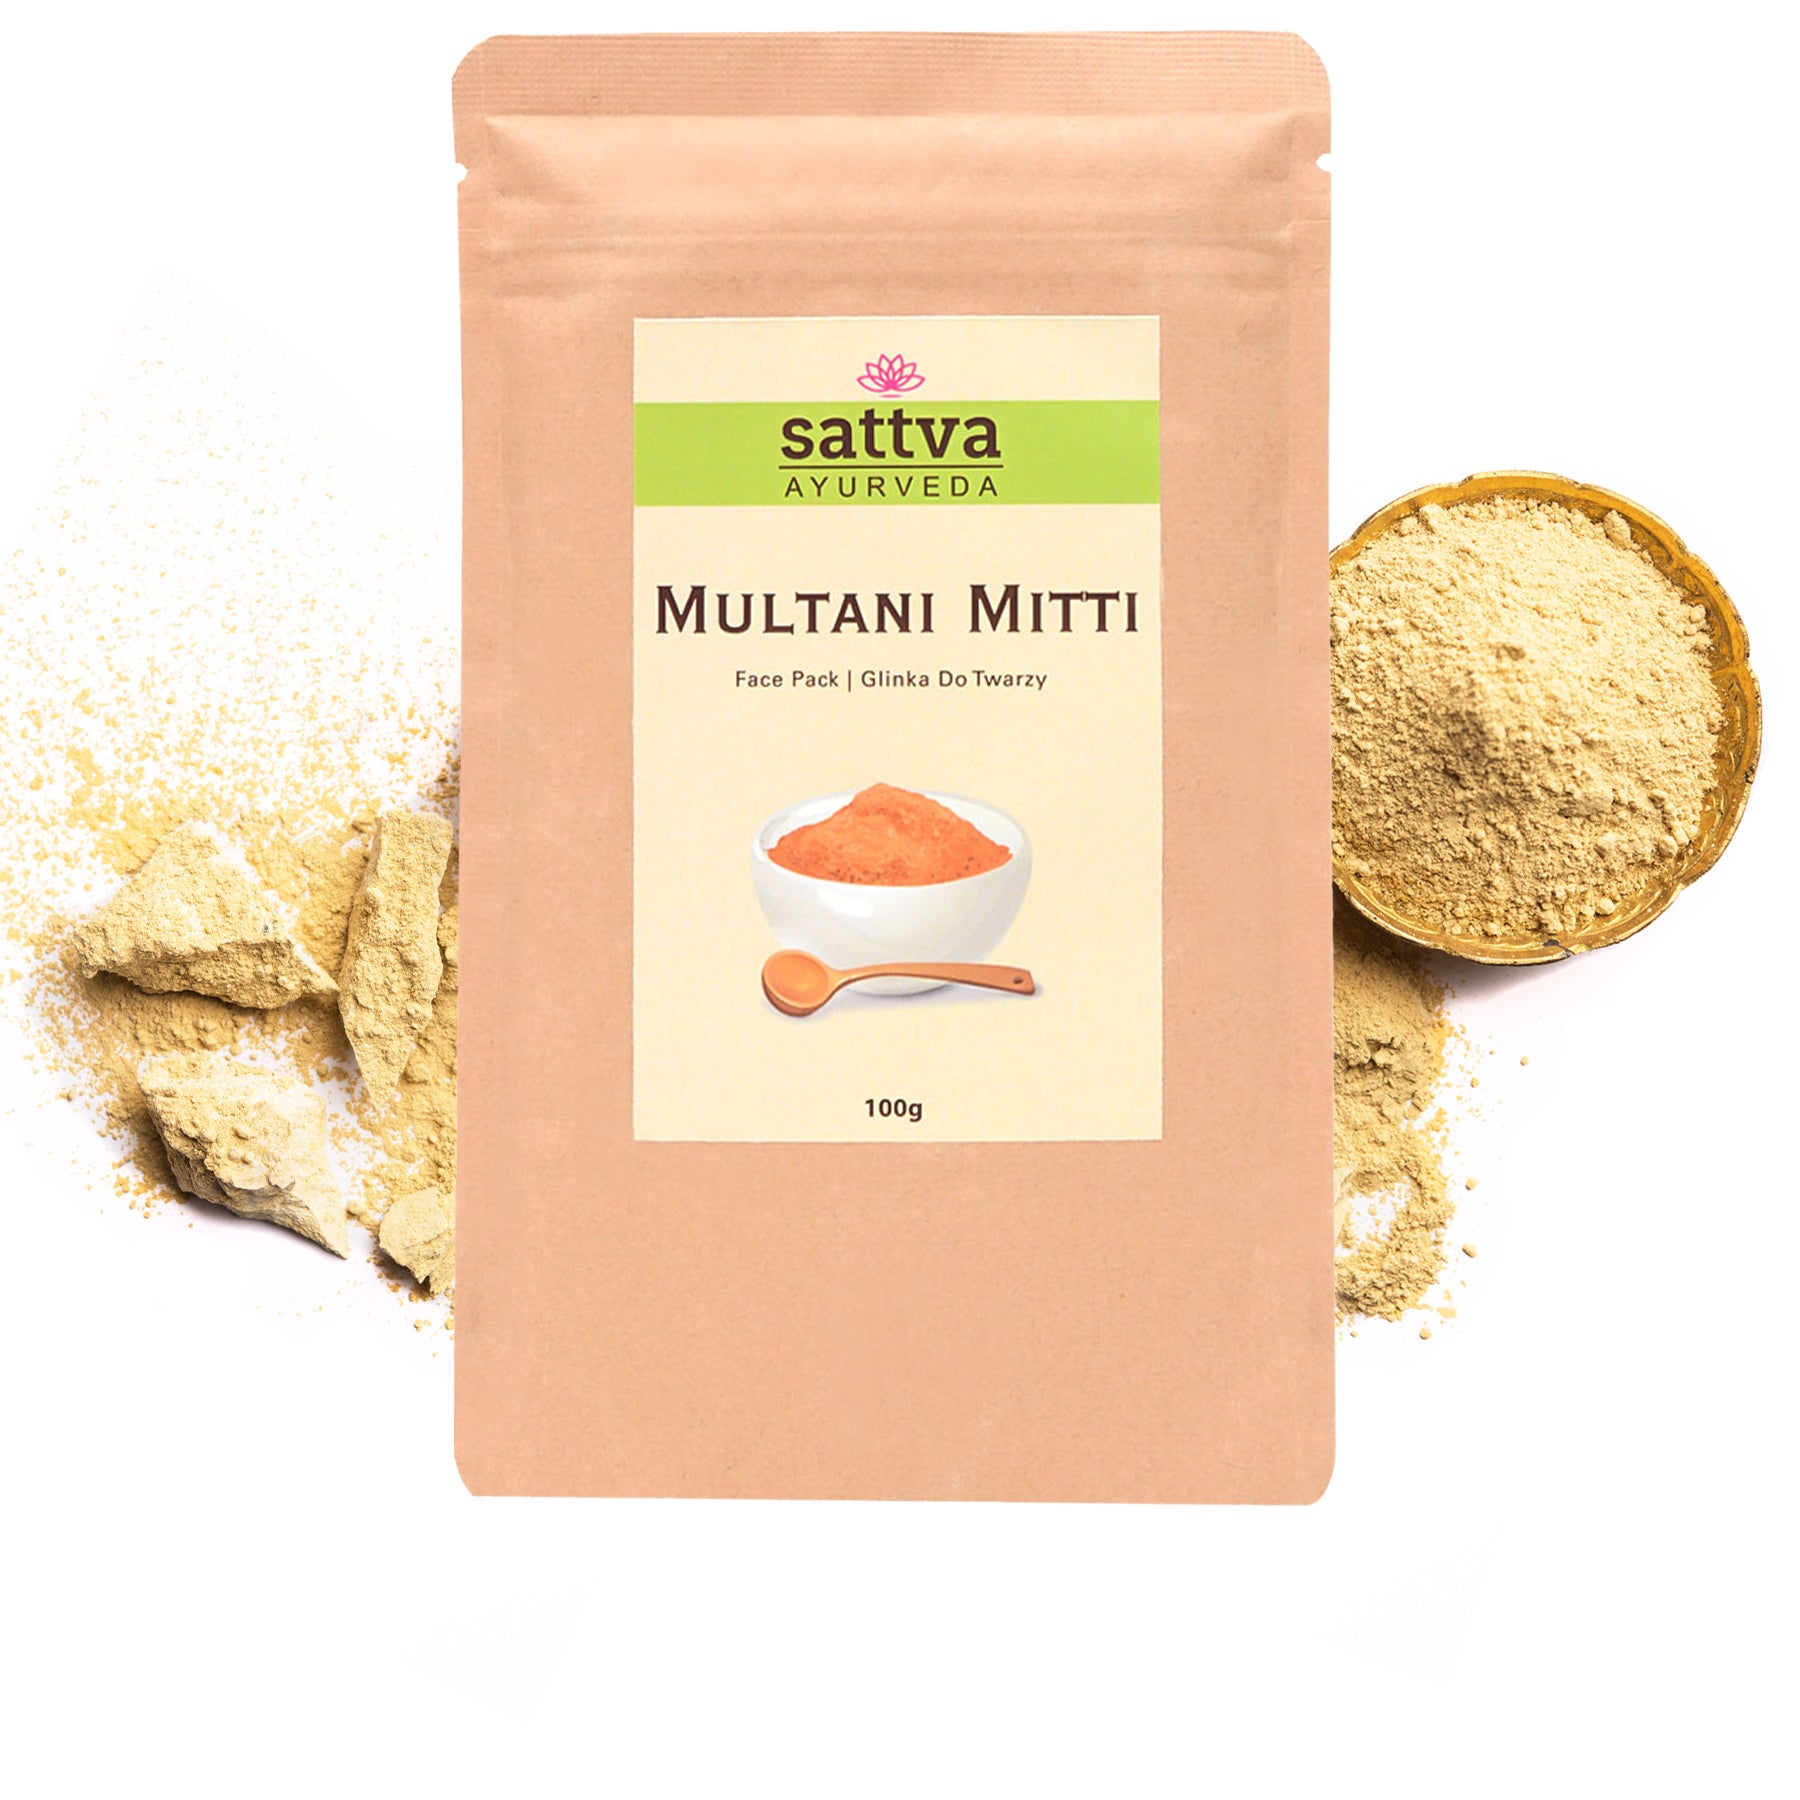 Multani Mitti Herbal Facial Mask Powder